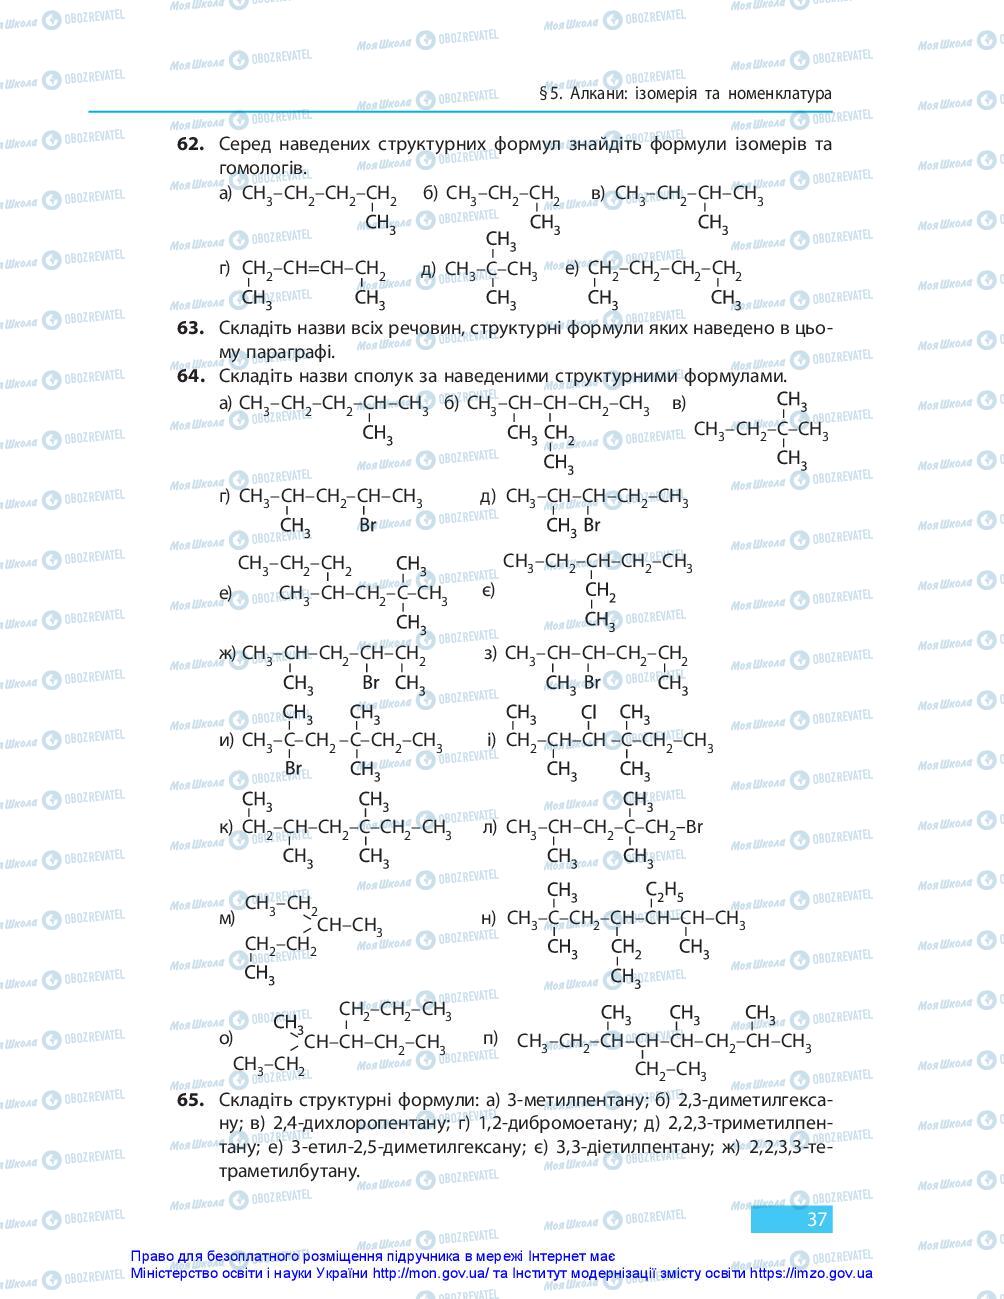 Підручники Хімія 10 клас сторінка 37